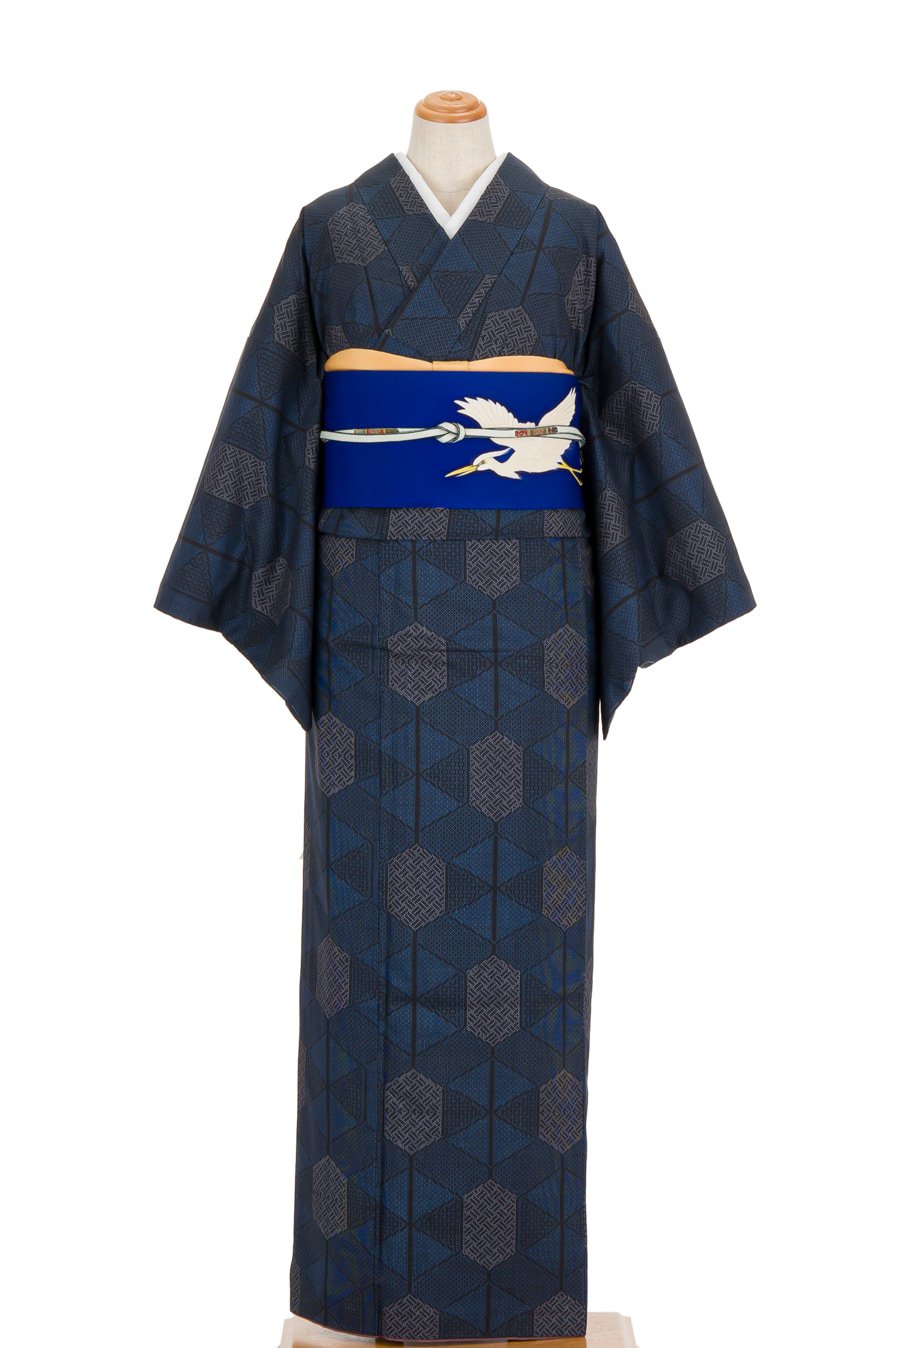 紬 紺の亀甲 - からん::アンティーク着物・リサイクル着物の通販サイト